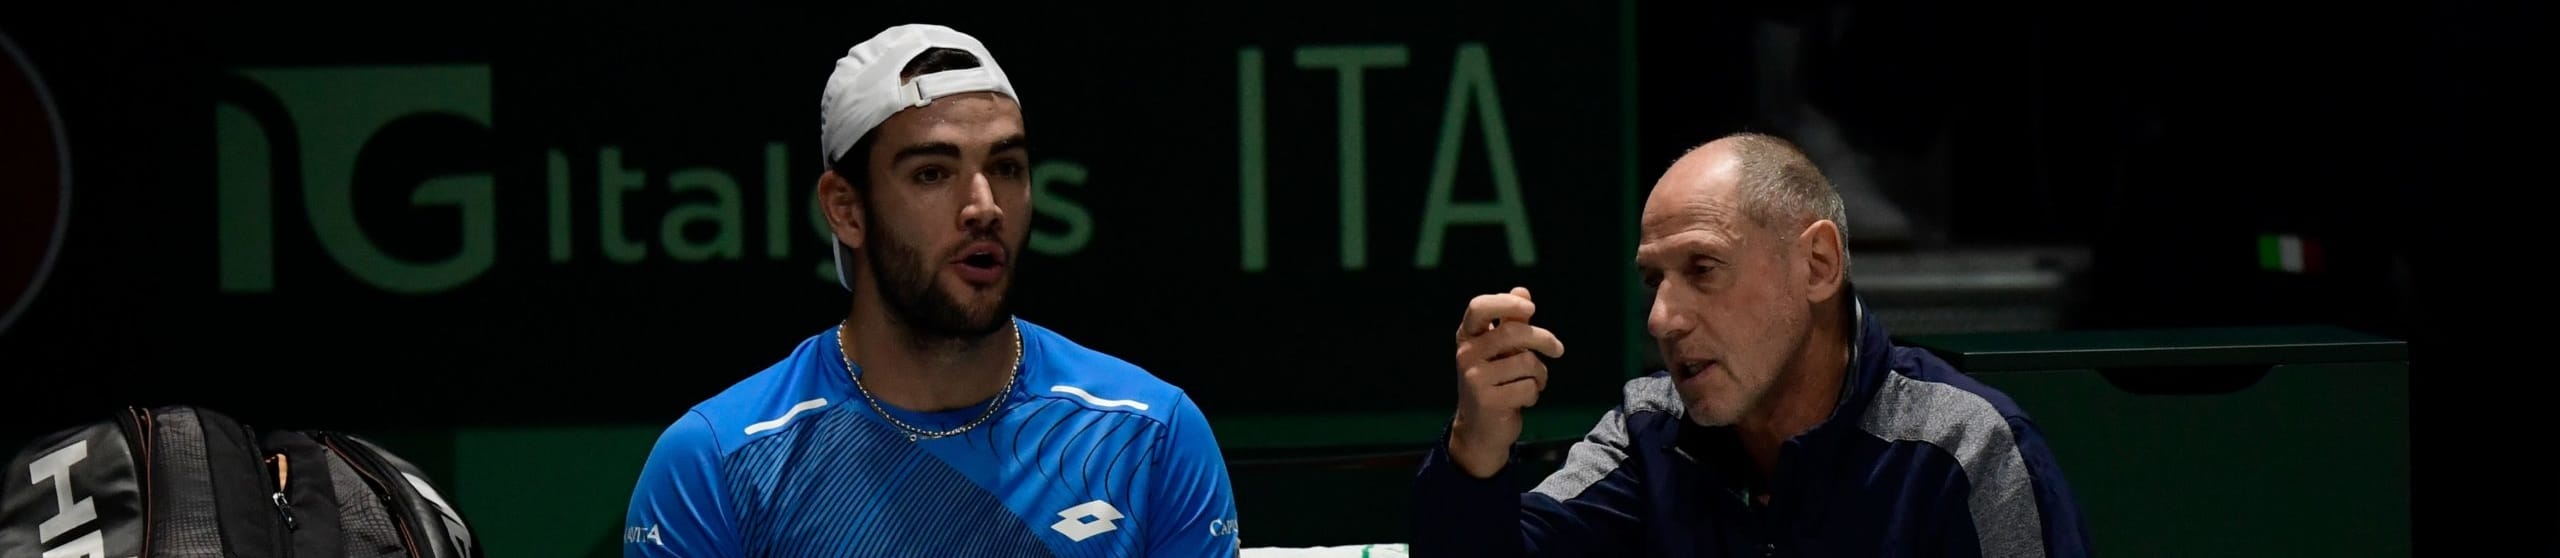 Coppa Davis, il disastro è servito: Italia tra le vittime di una formula folle